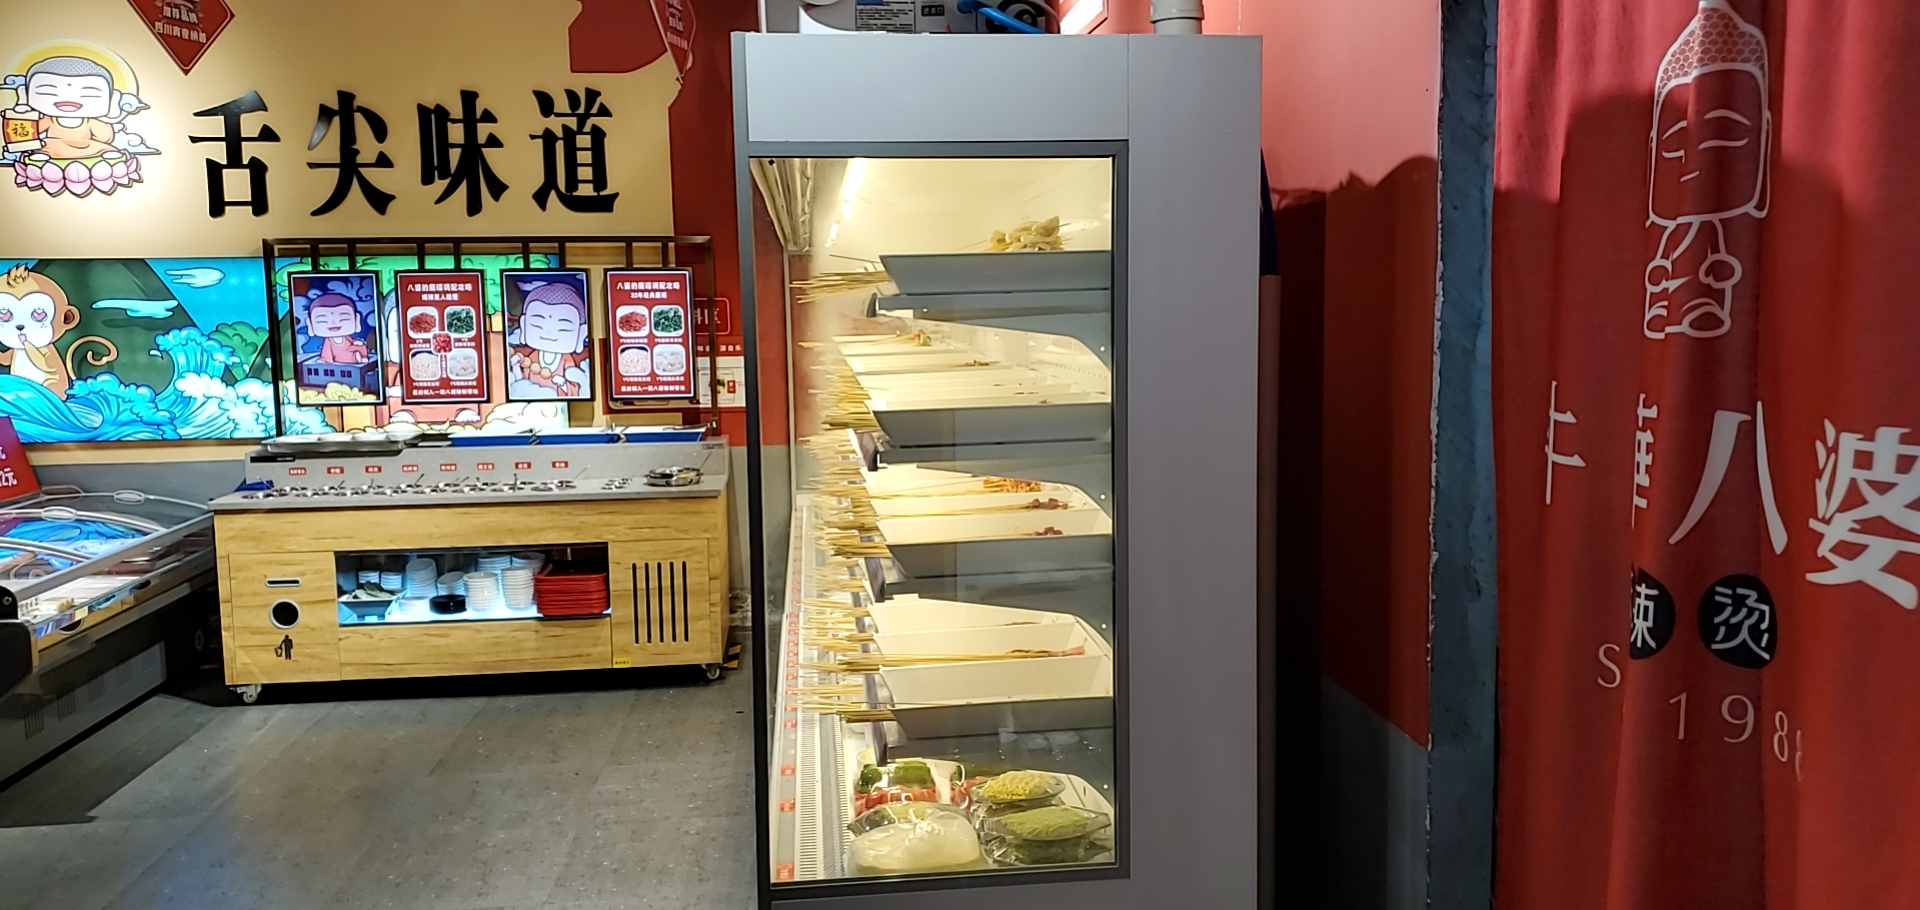 冷藏冷冻商用保鲜柜菜品展示冰箱火锅点菜柜风幕柜商用冰箱未来雪图片